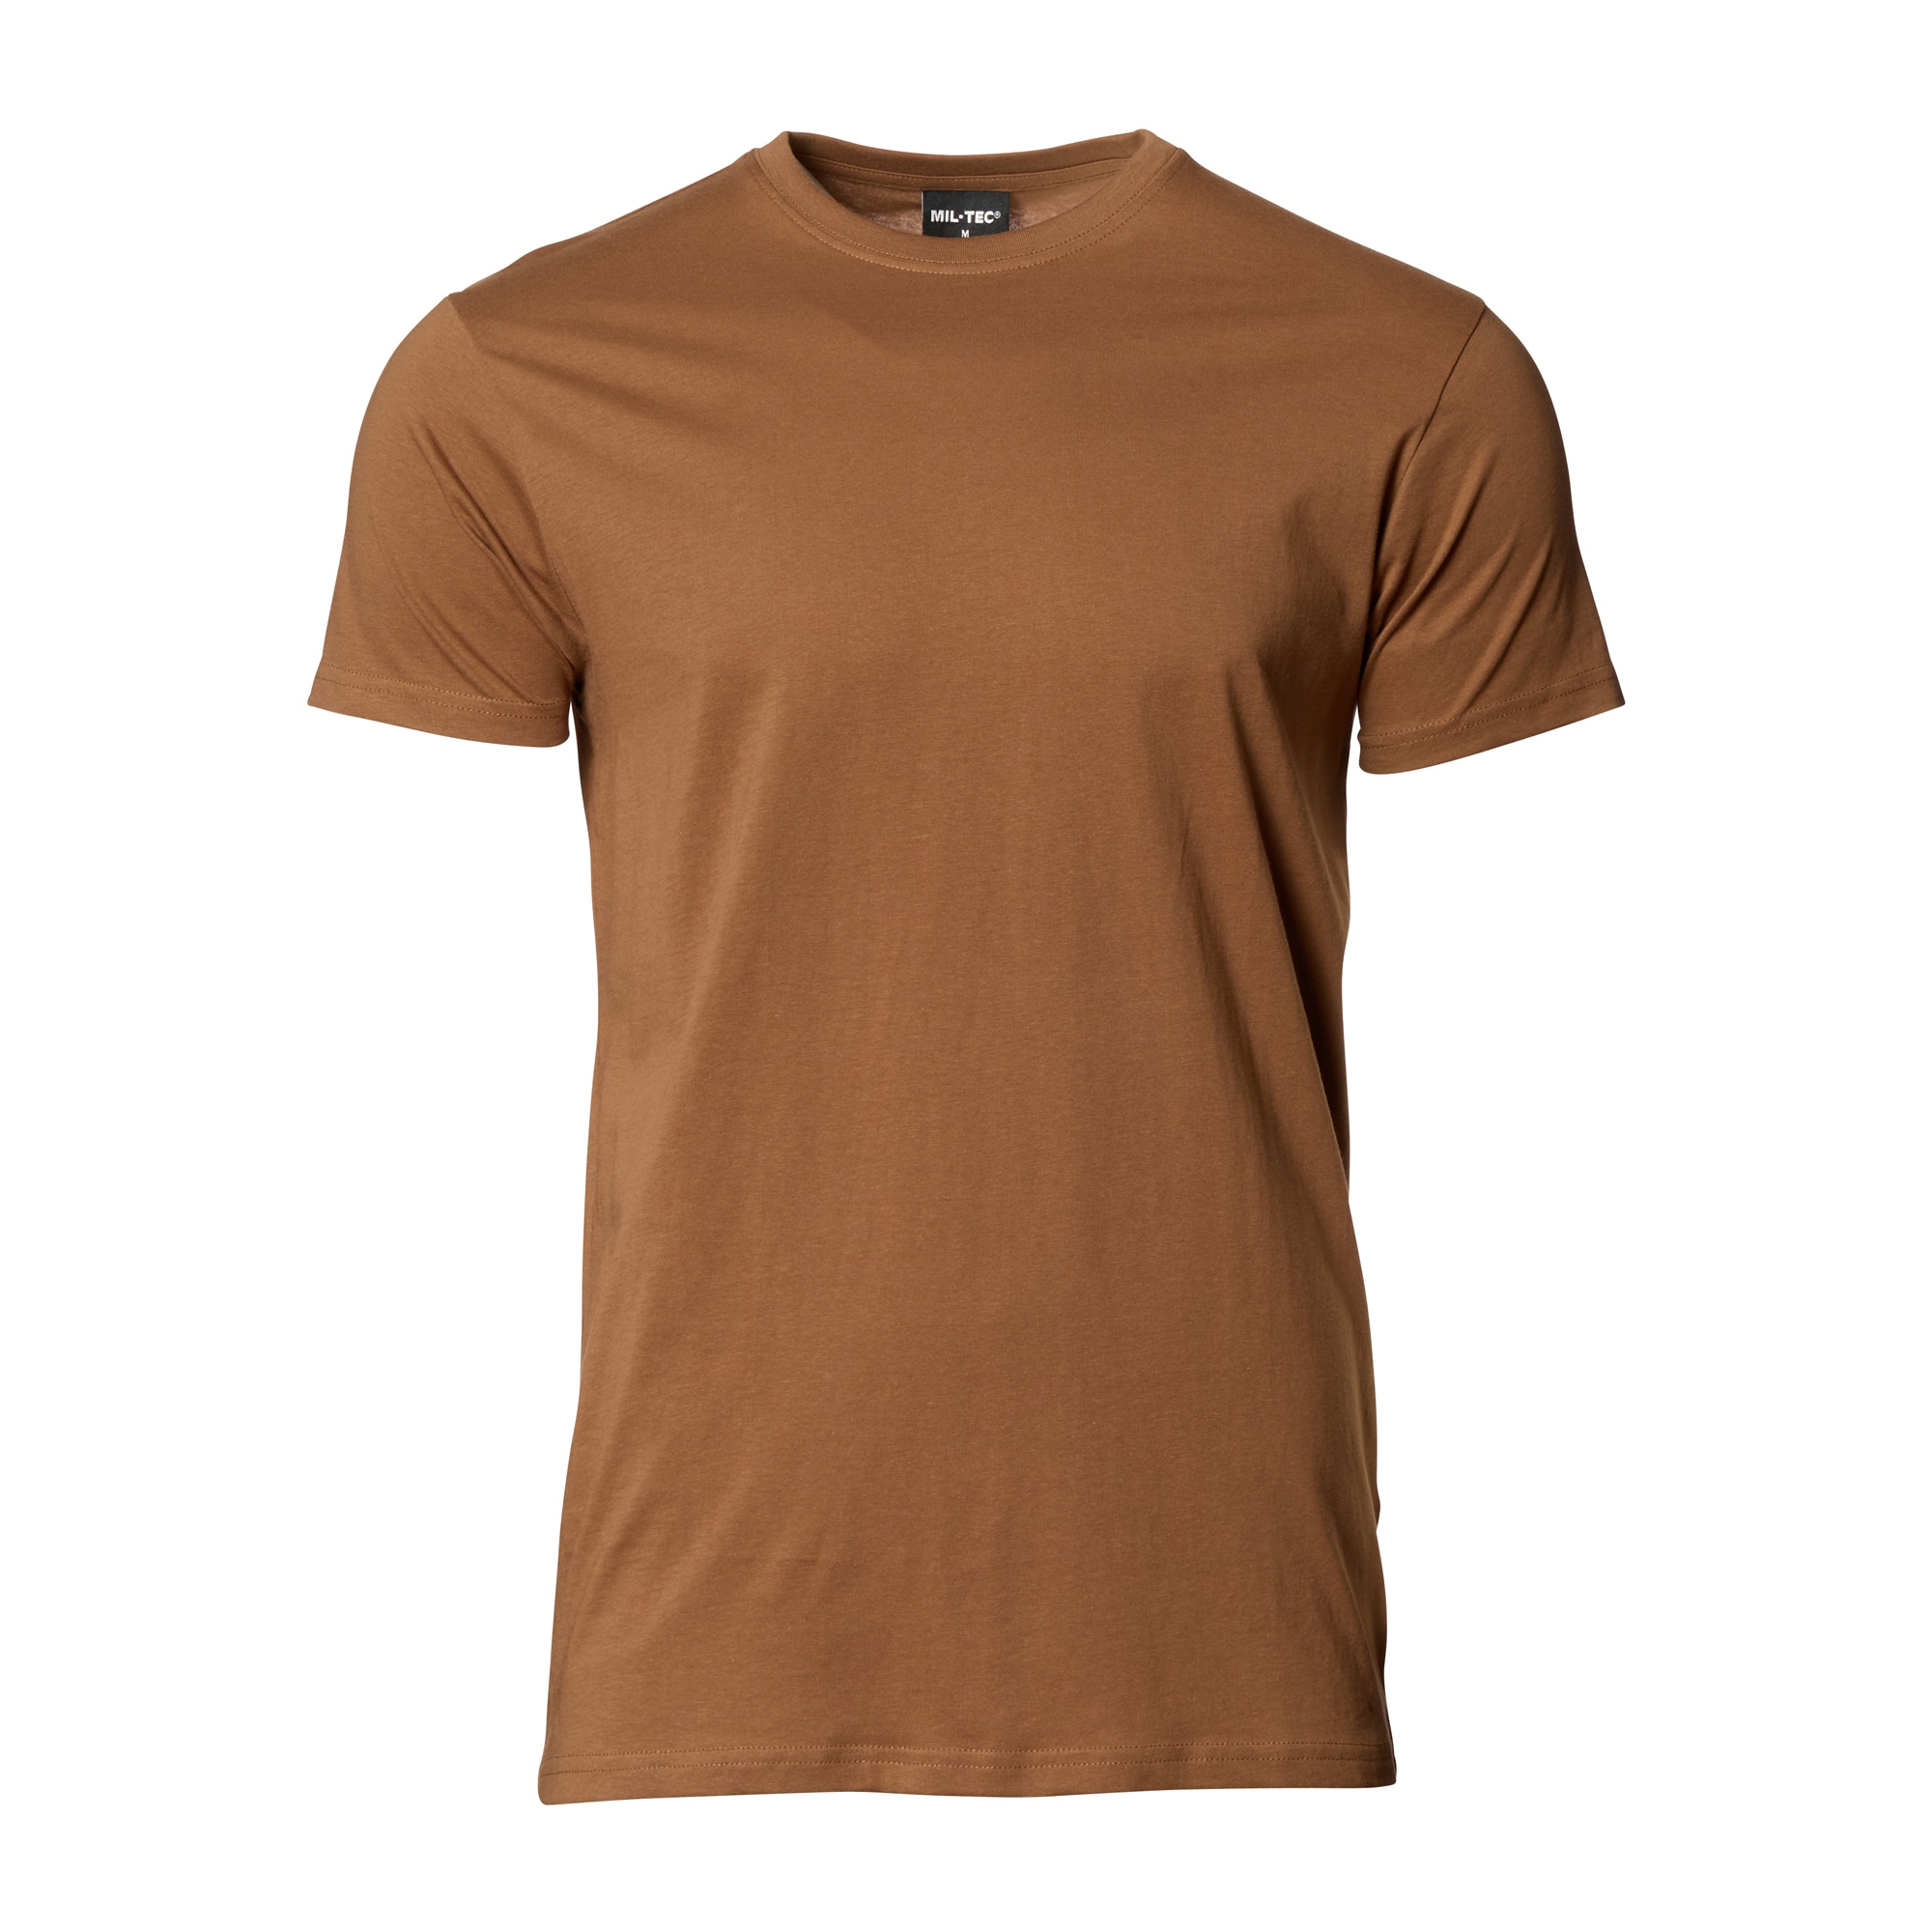 Comprar Mil-Tec Camiseta marrón en ASMC